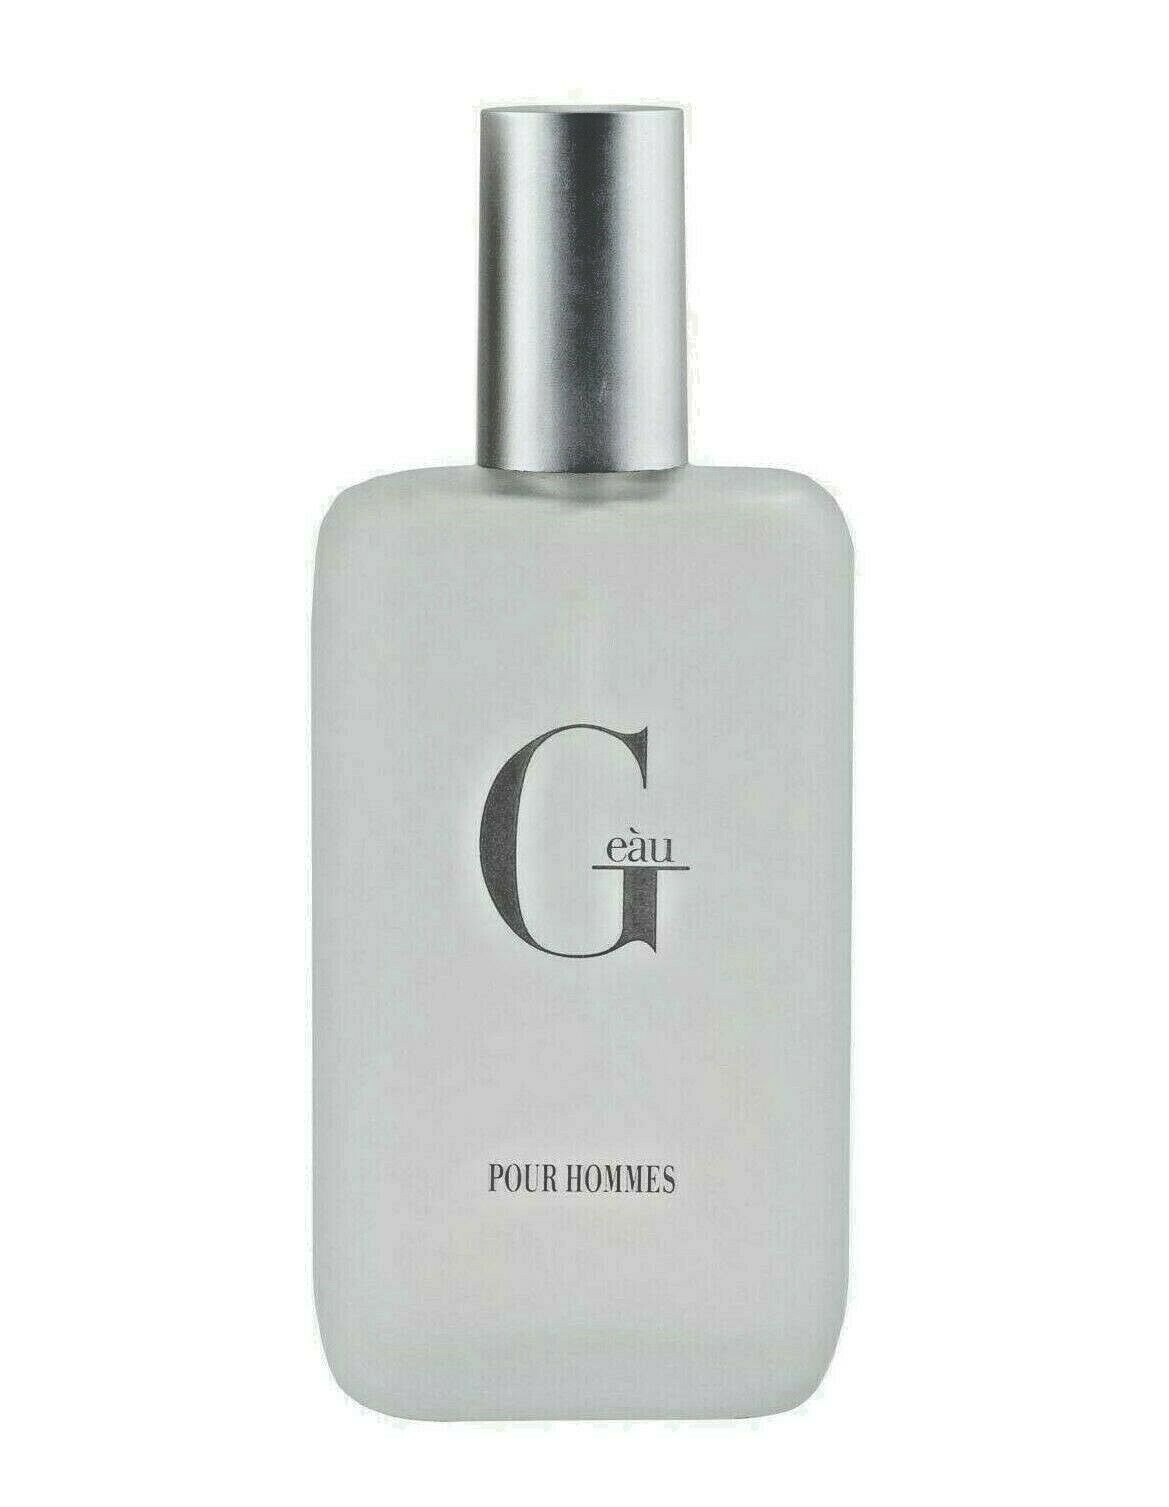 PB Parfums Belcam G Eau Version of Acqua Di Gio* Eau de Toilette, Co